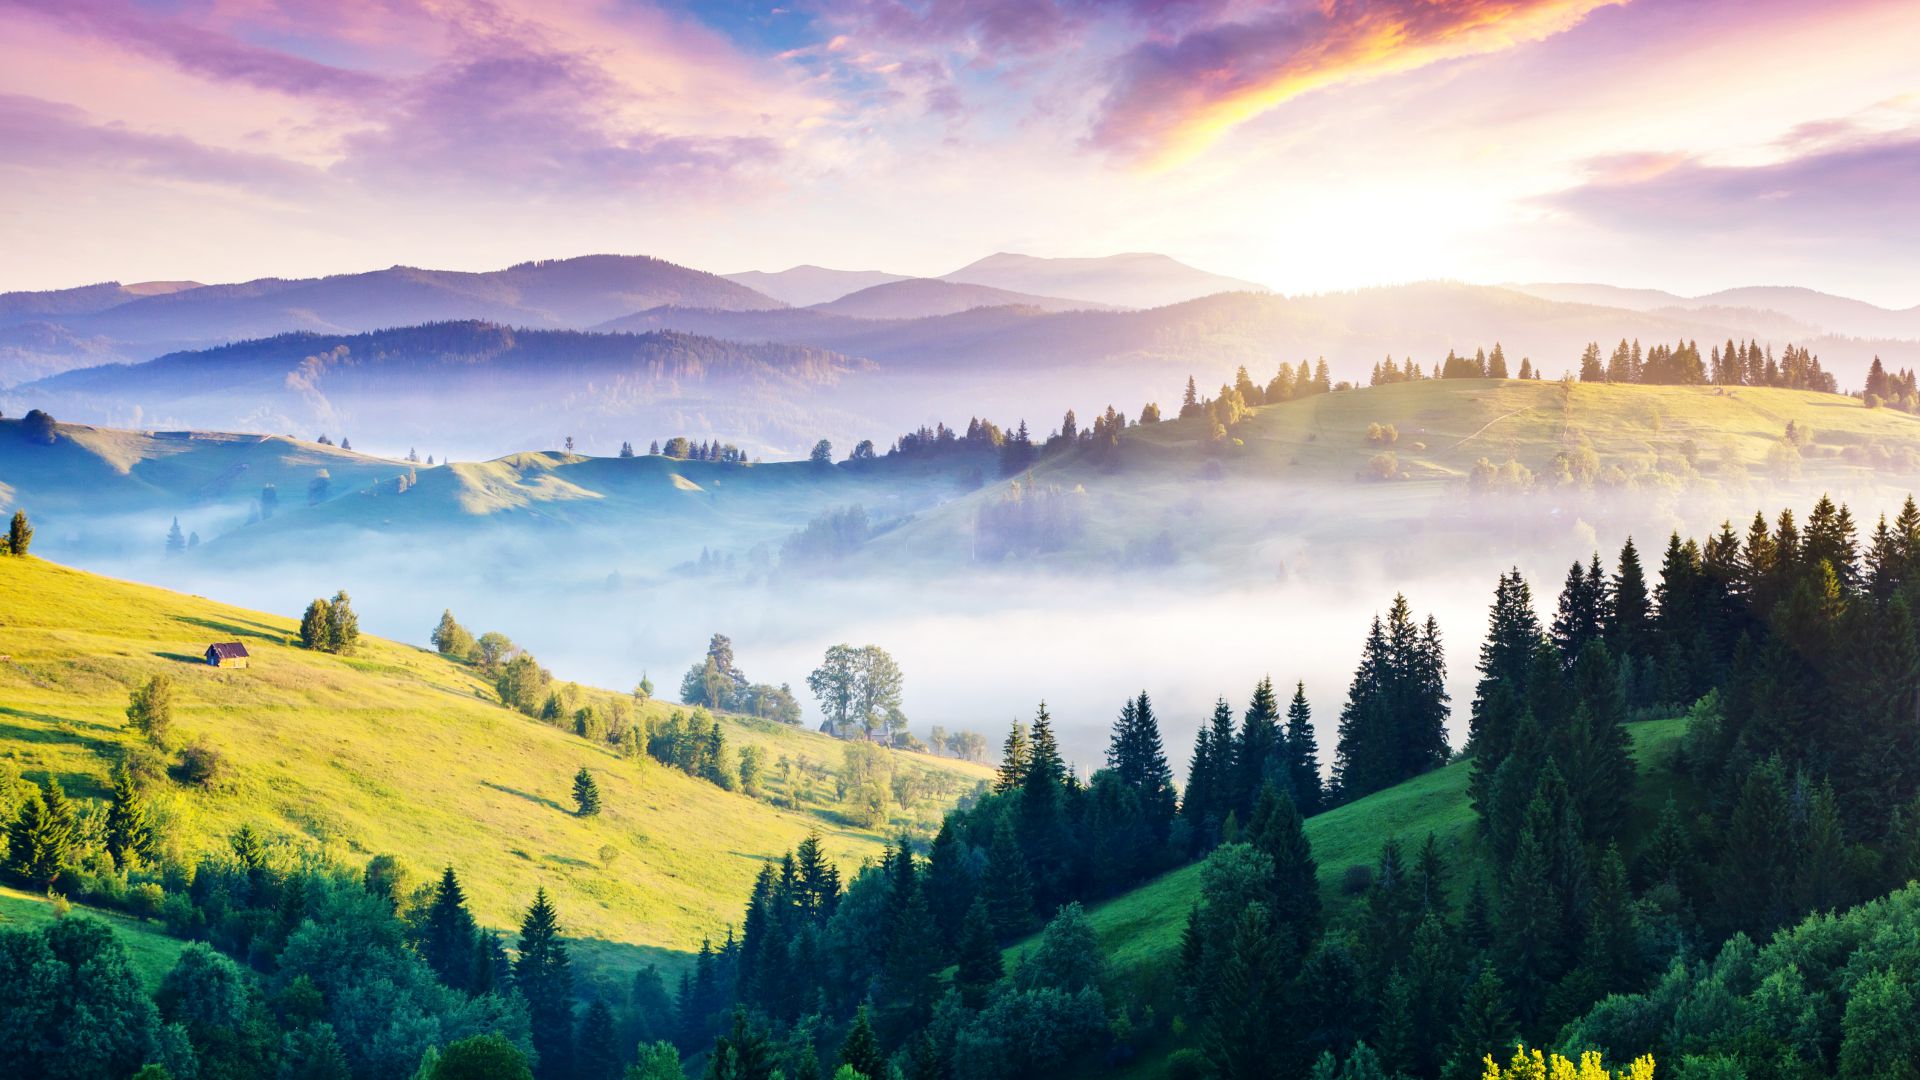 Карпаты, 5k, 4k, сосны, горы, закат, туман, Carpathians, 5k, 4k wallpaper, pines, hills, sunset, fog (horizontal)